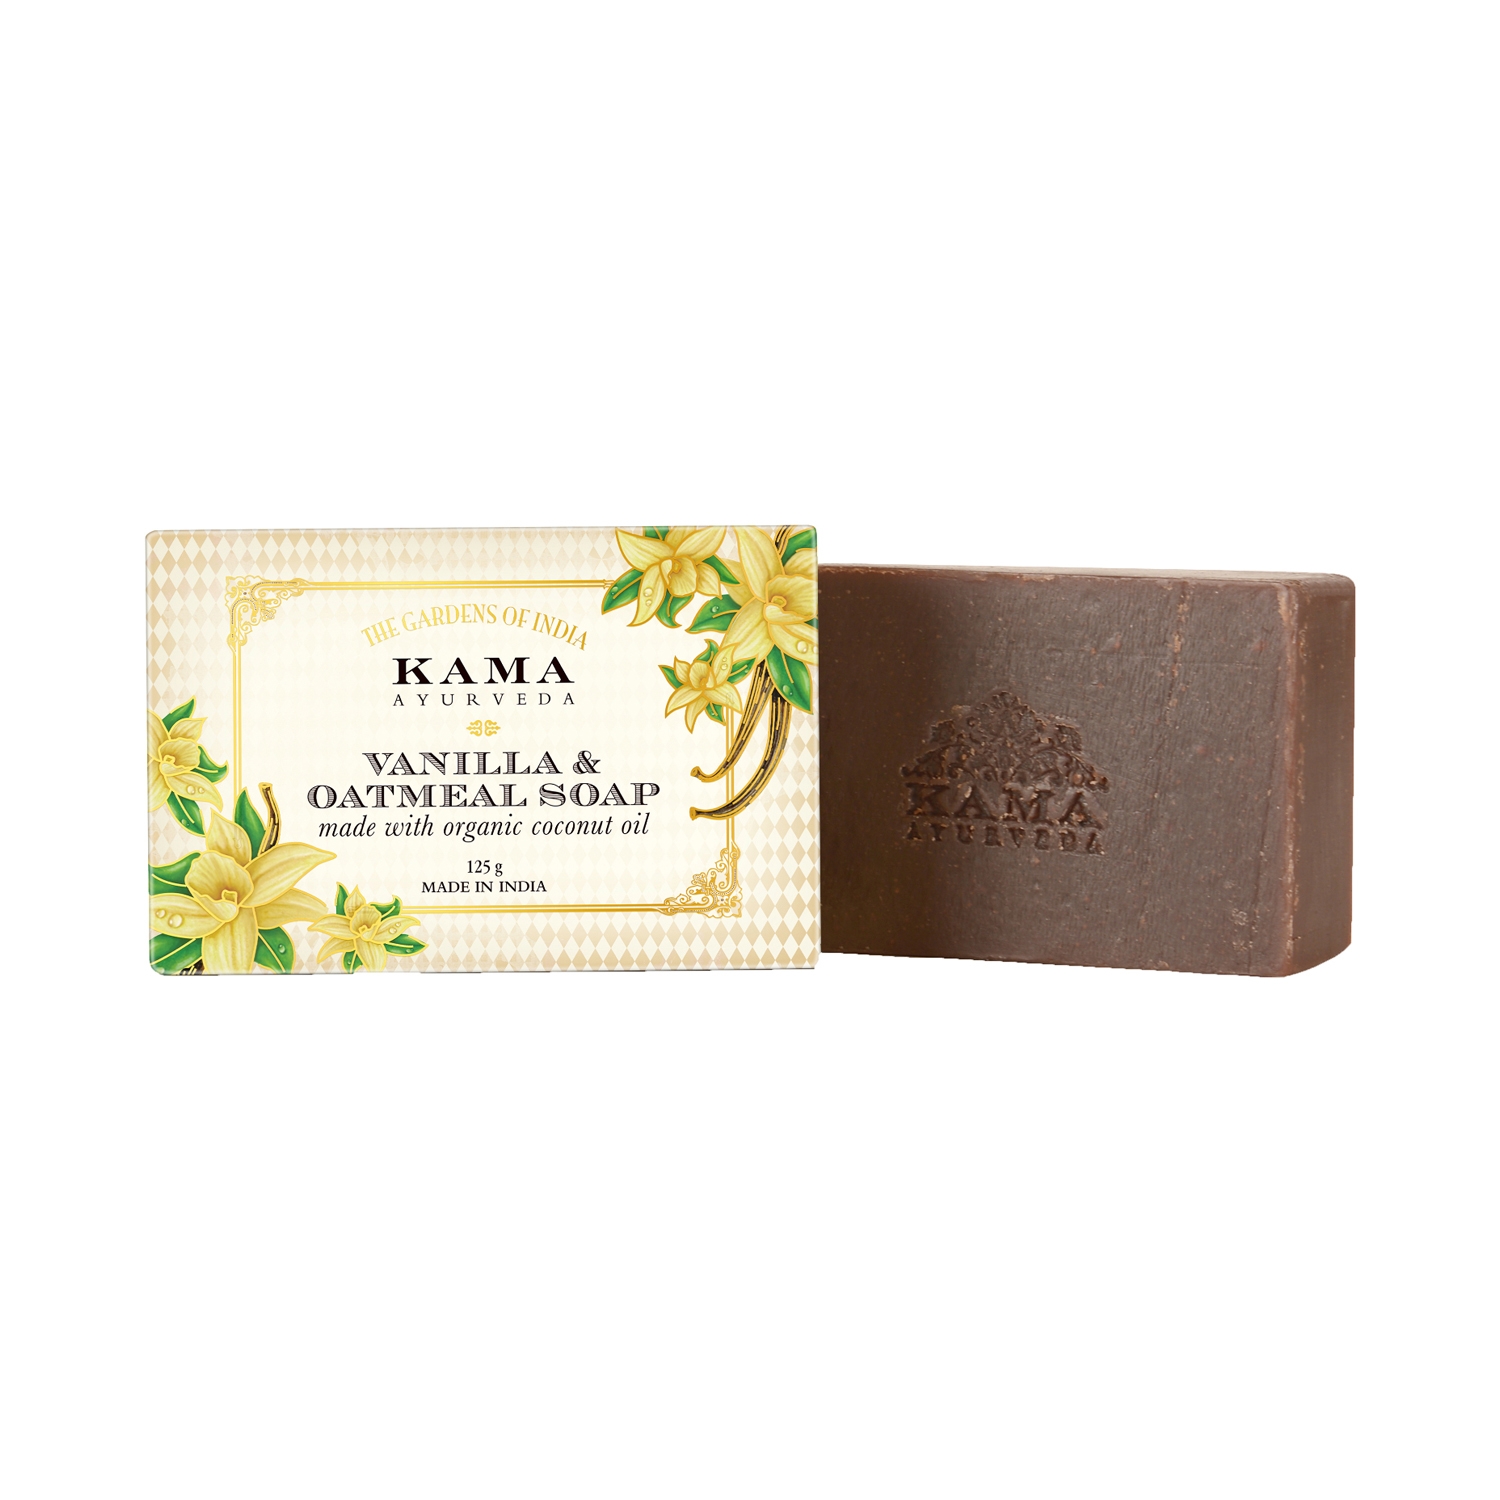 KAMA Ayurveda | KAMA Ayurveda Vanilla and Oatmeal Soap (125g)